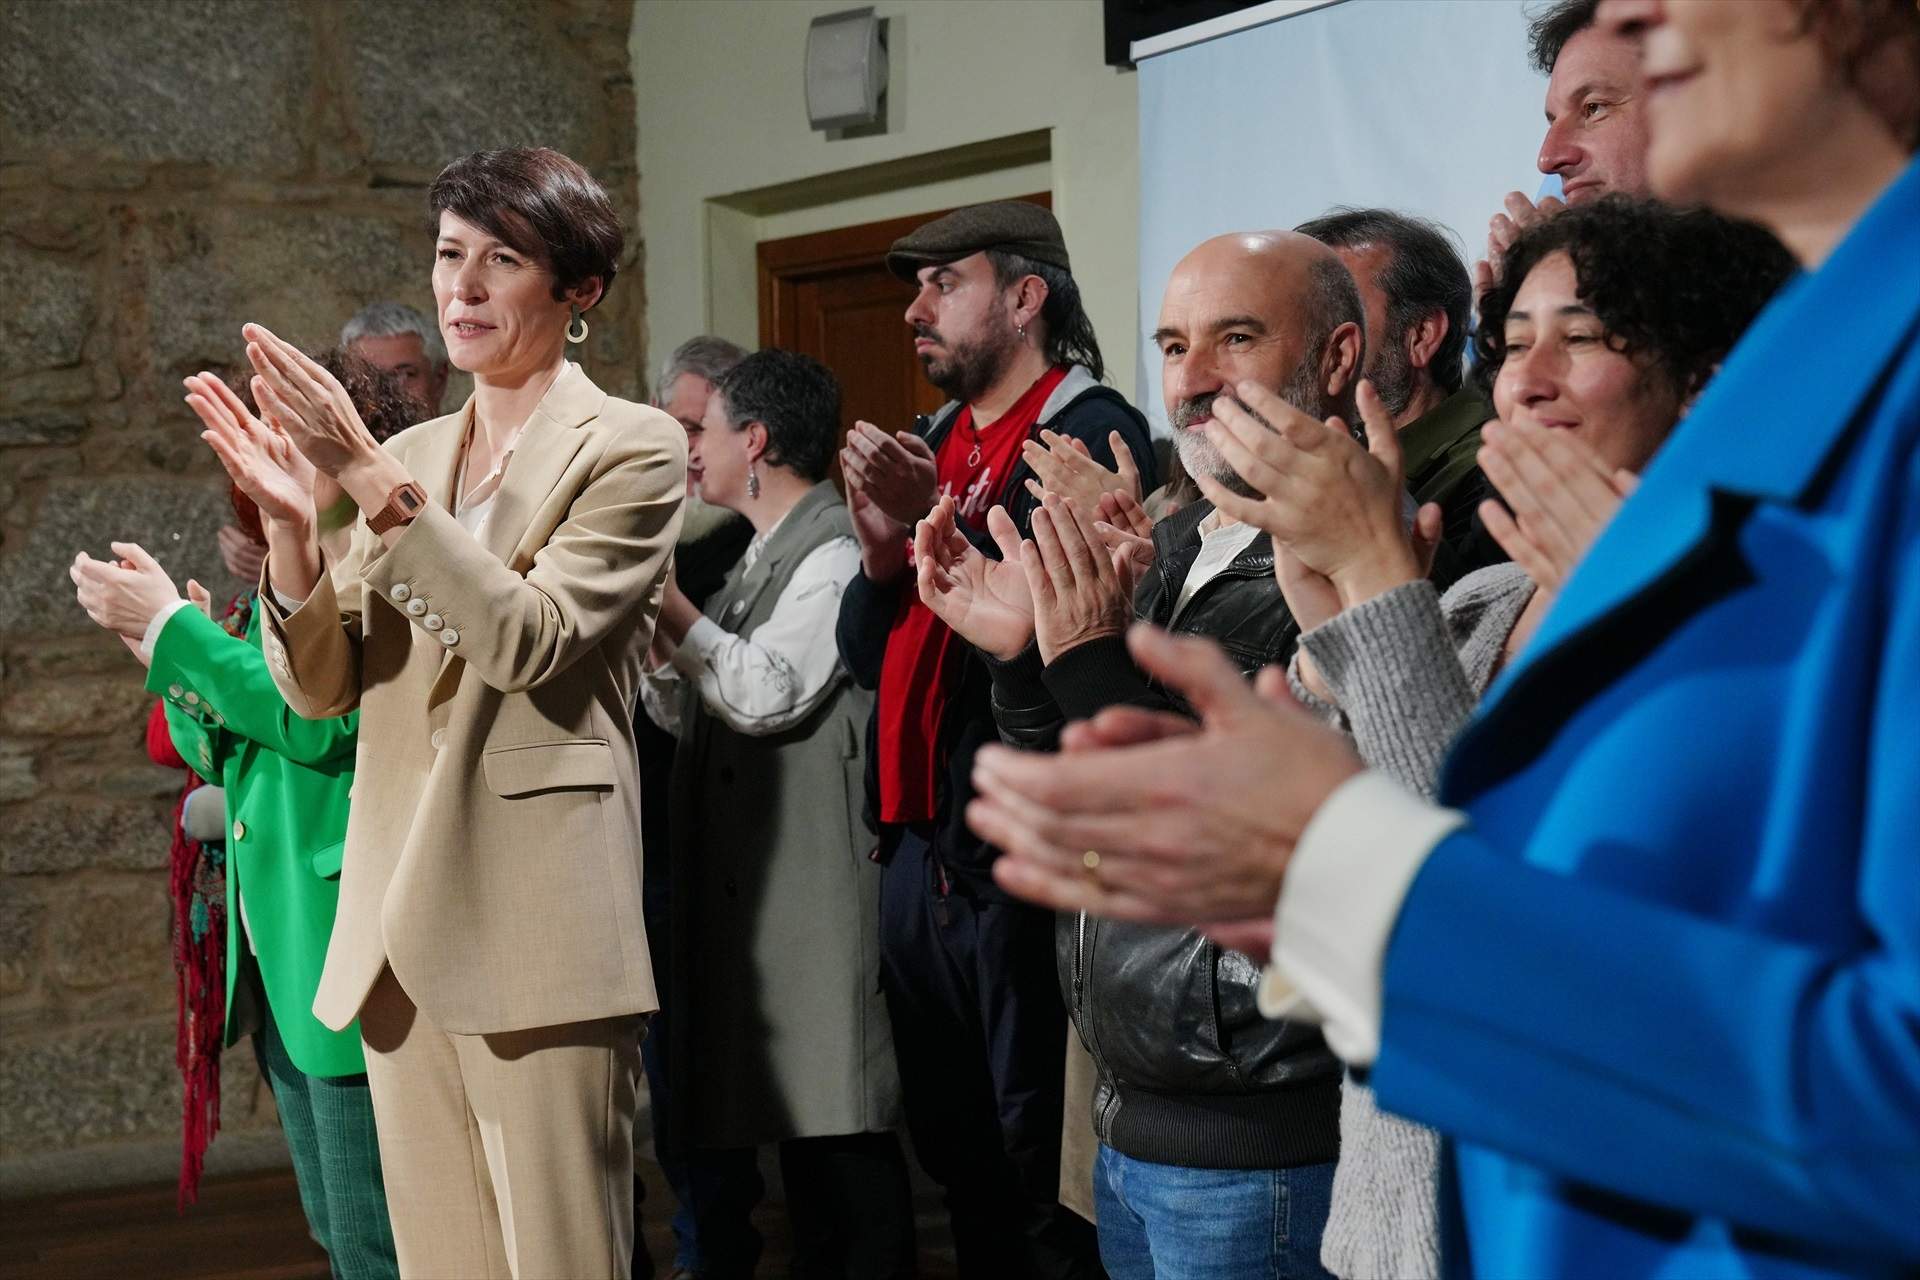 El BNG s’erigeix en “l’alternativa indiscutible” al PP i dona per començat “un nou cicle” a Galícia